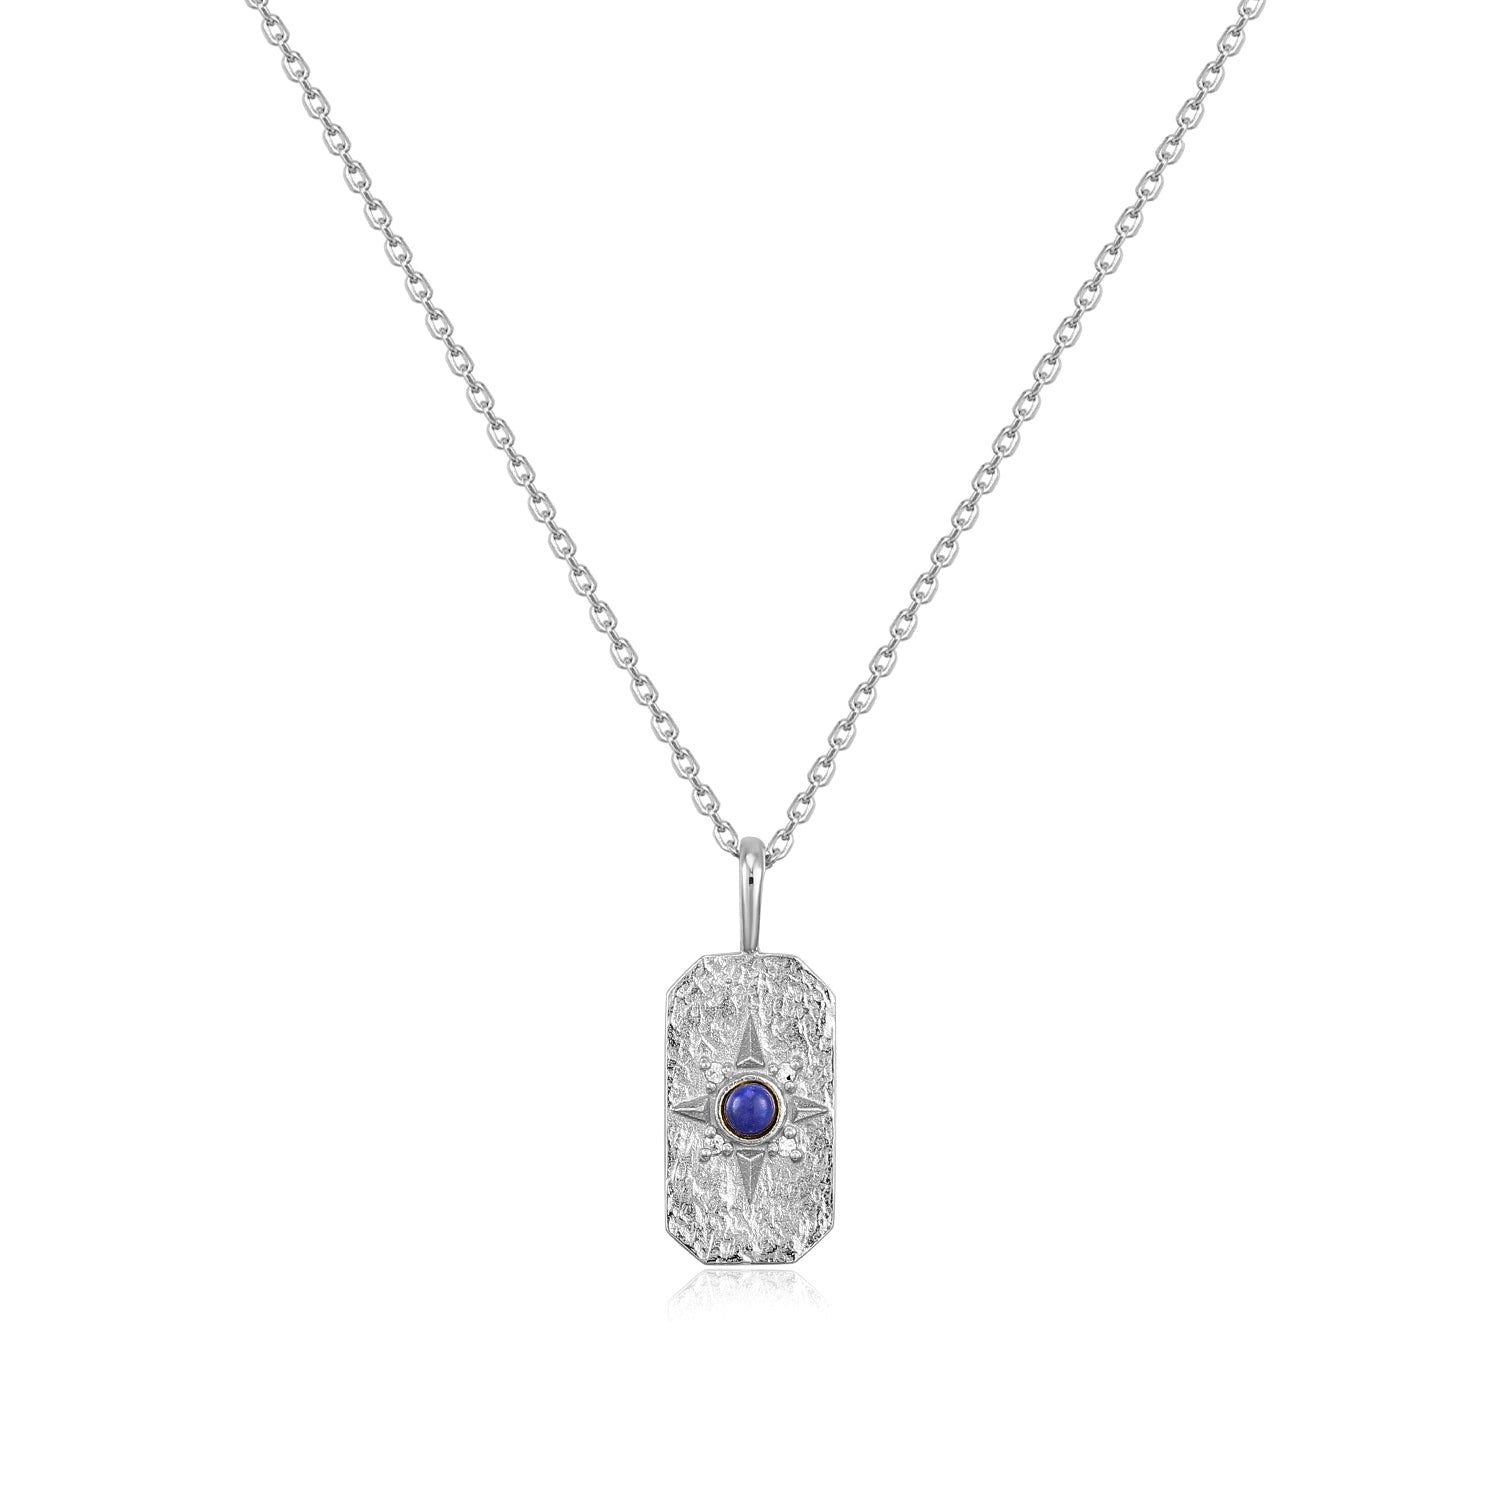 Mellonia | Jatoba Necklace | Lapis Lazuli & White CZ | White Rhodium Plated 925 Silver